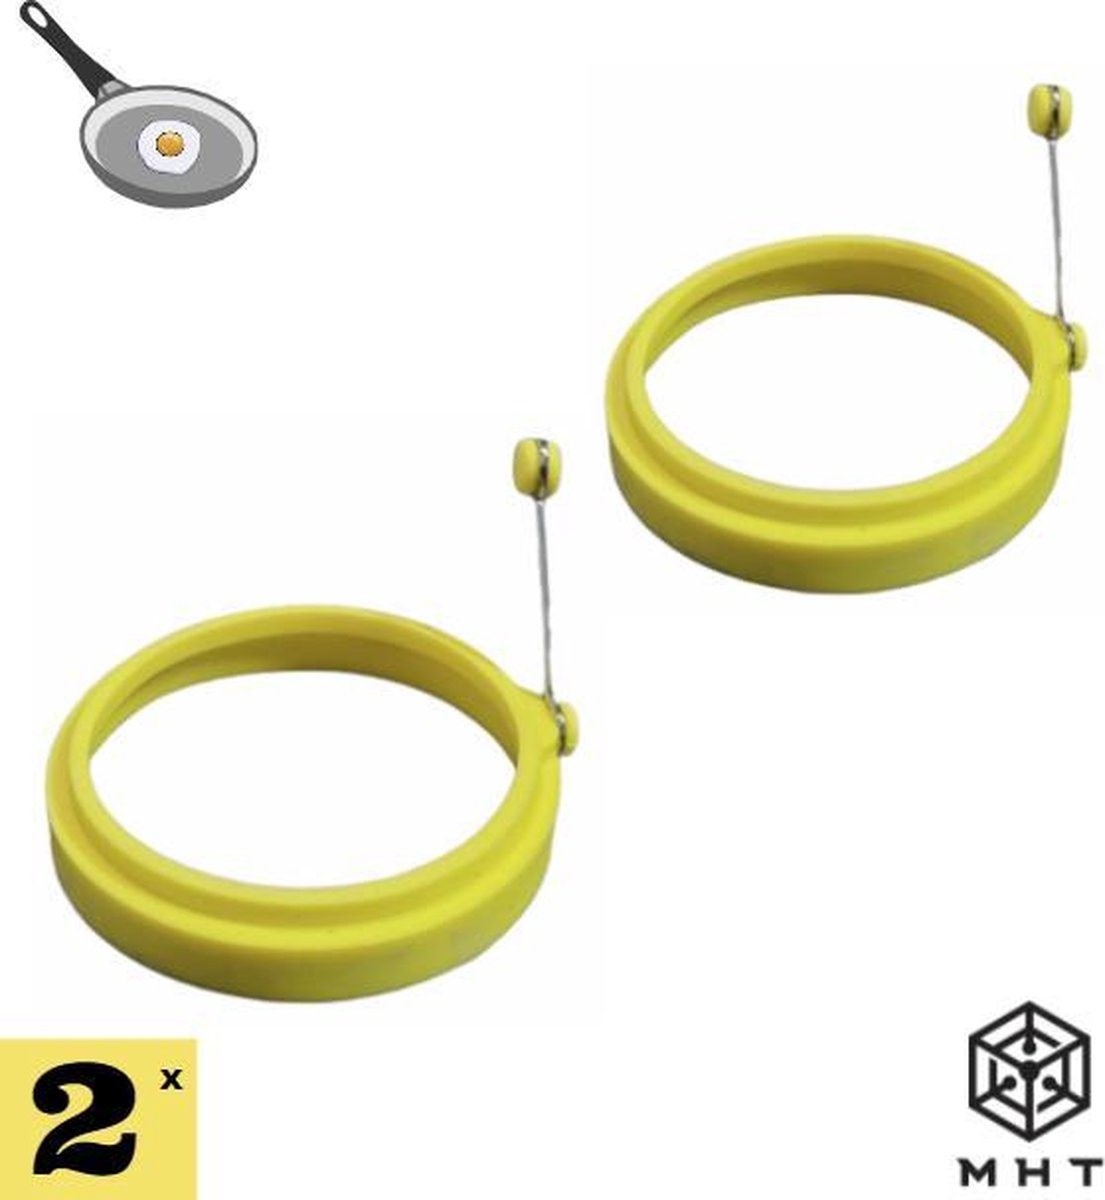 Ei Ring - Pancake Ring - Geel - 2 stuks - Pancake Maker - 10 Verschillende Varianten